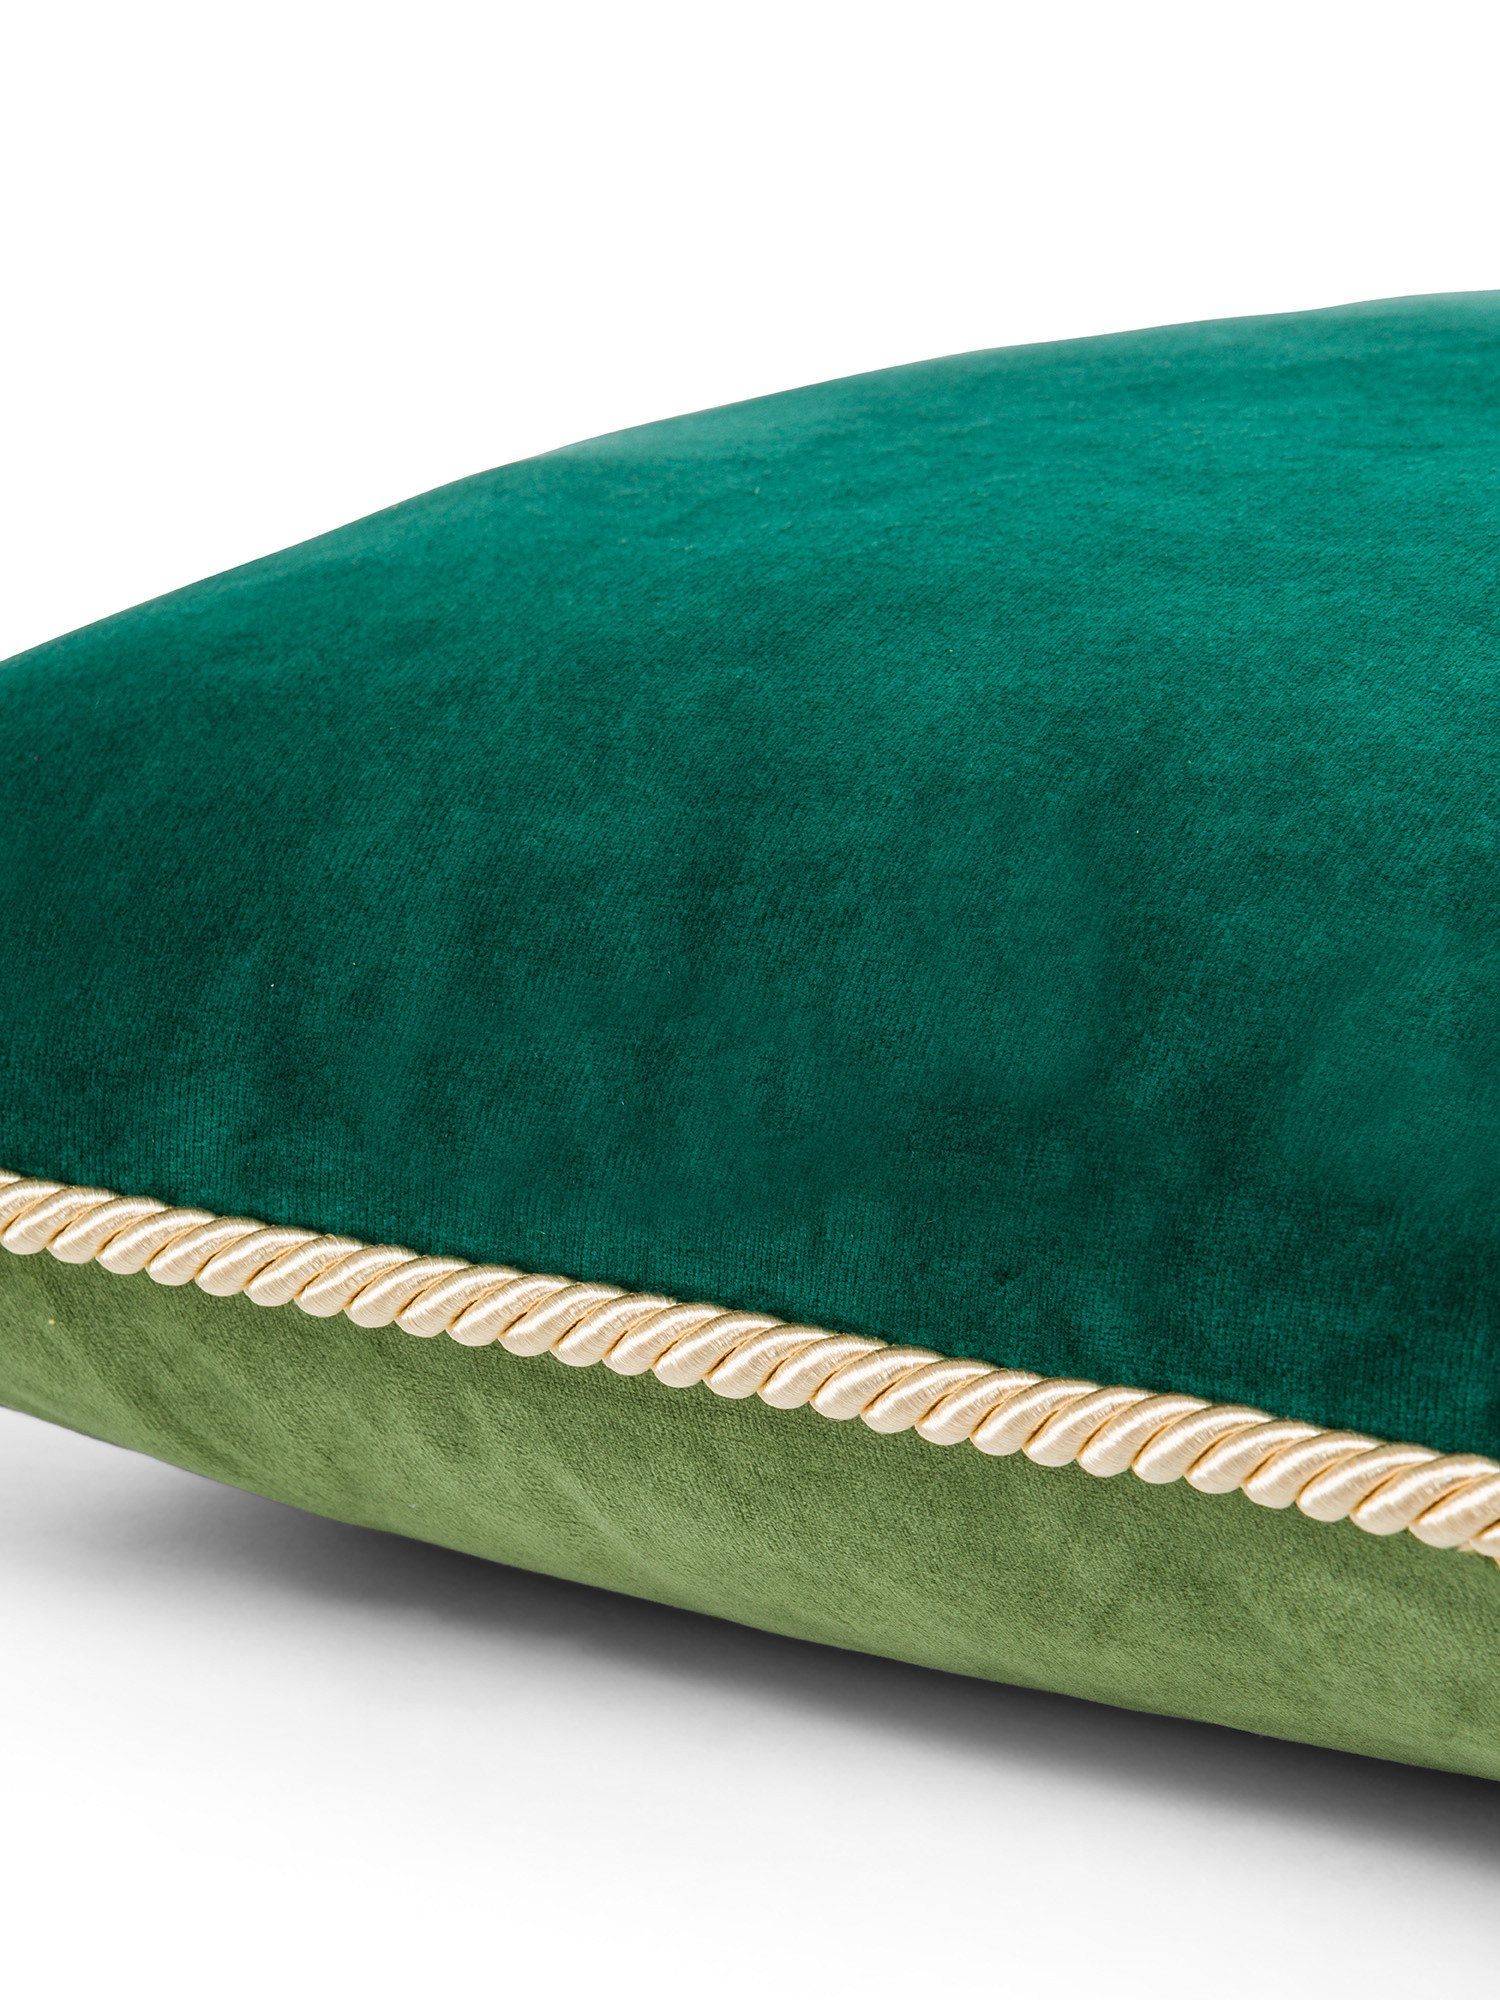 Cuscino velluto bicolore 45X45cm, Verde, large image number 2